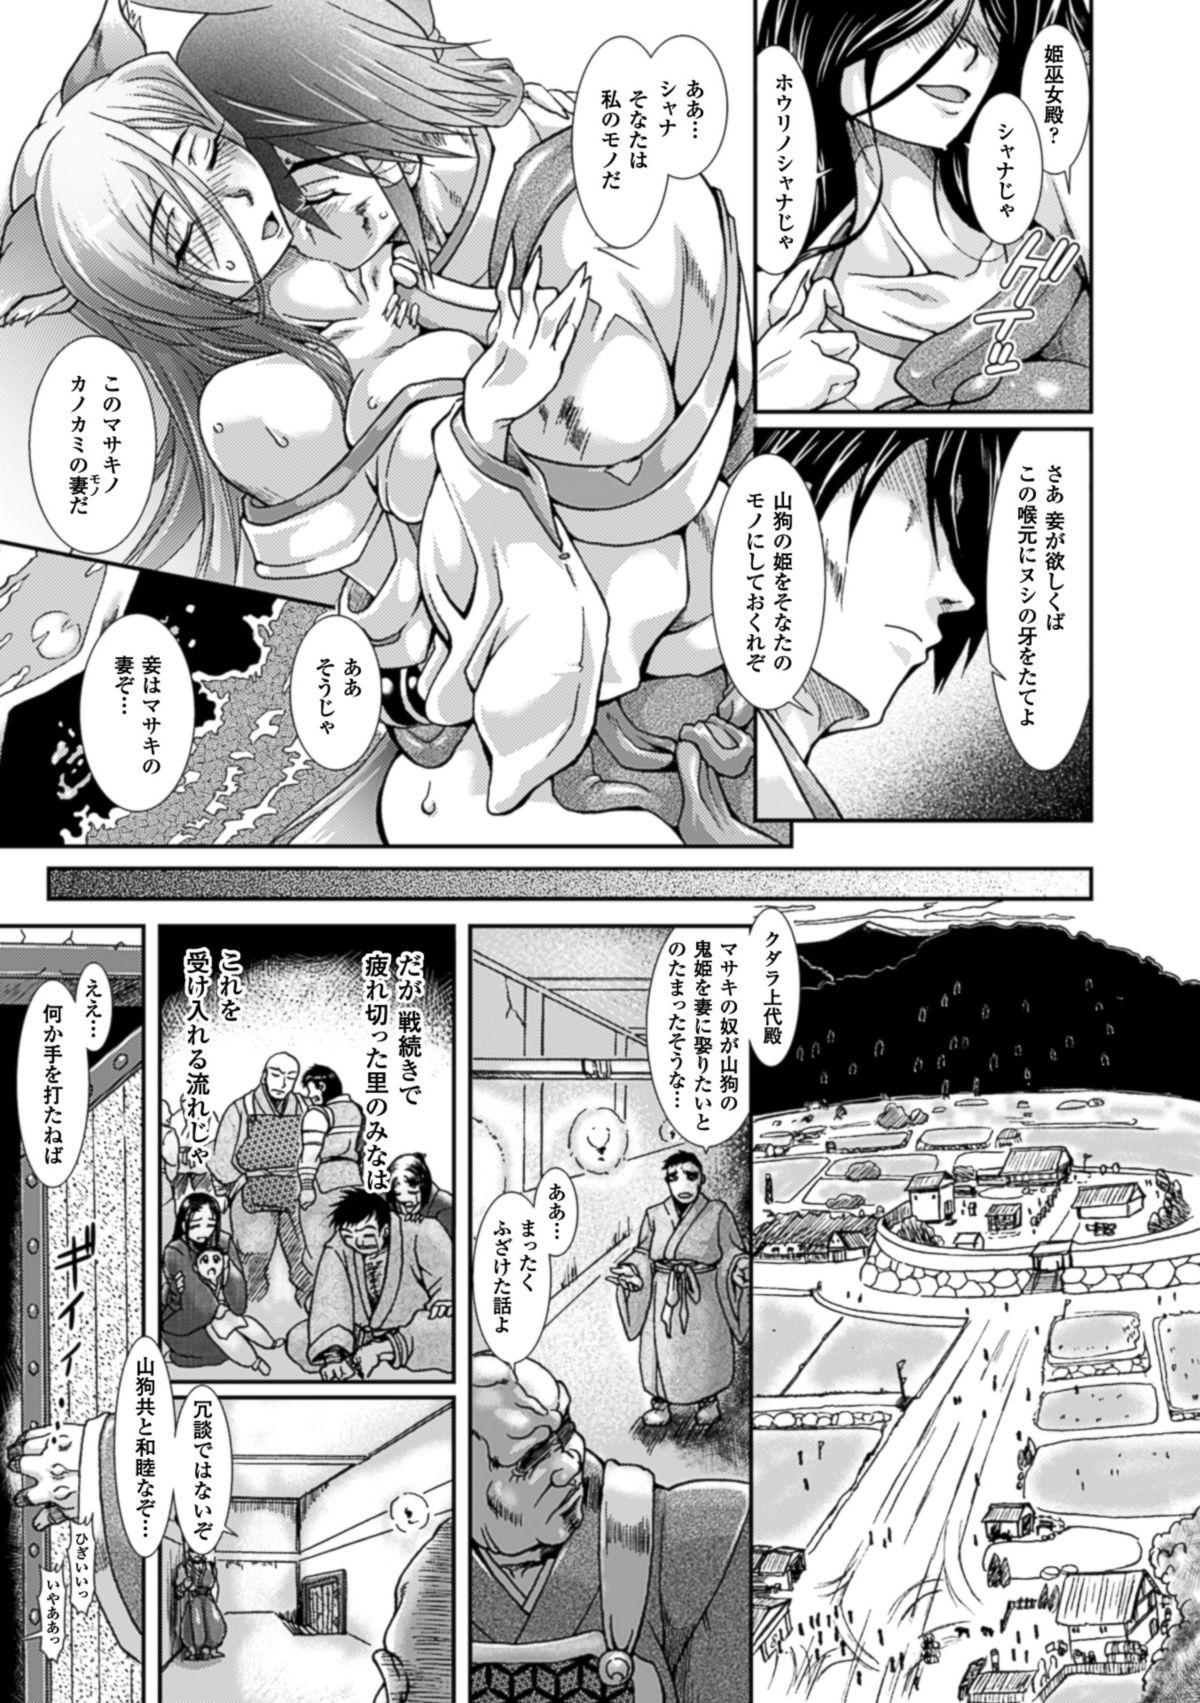 Sensual Shokutai no Yoru Ingoku no Chigiri Mujer - Page 8